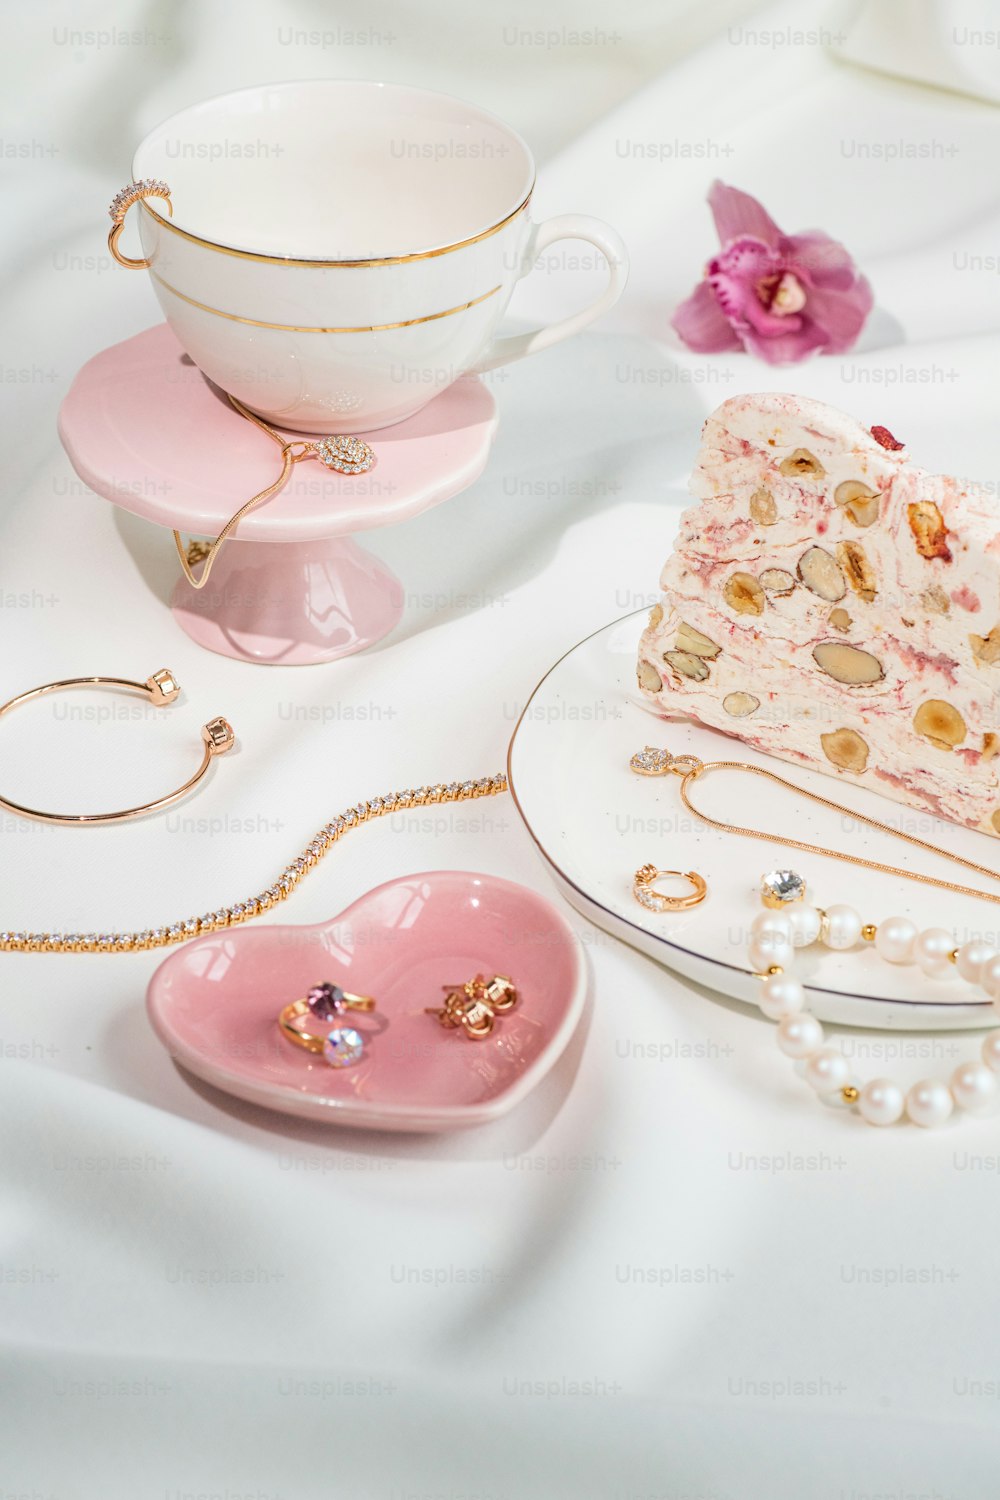 Ein Tisch mit einem rosa Kuchen neben einer Tasse und einer Untertasse